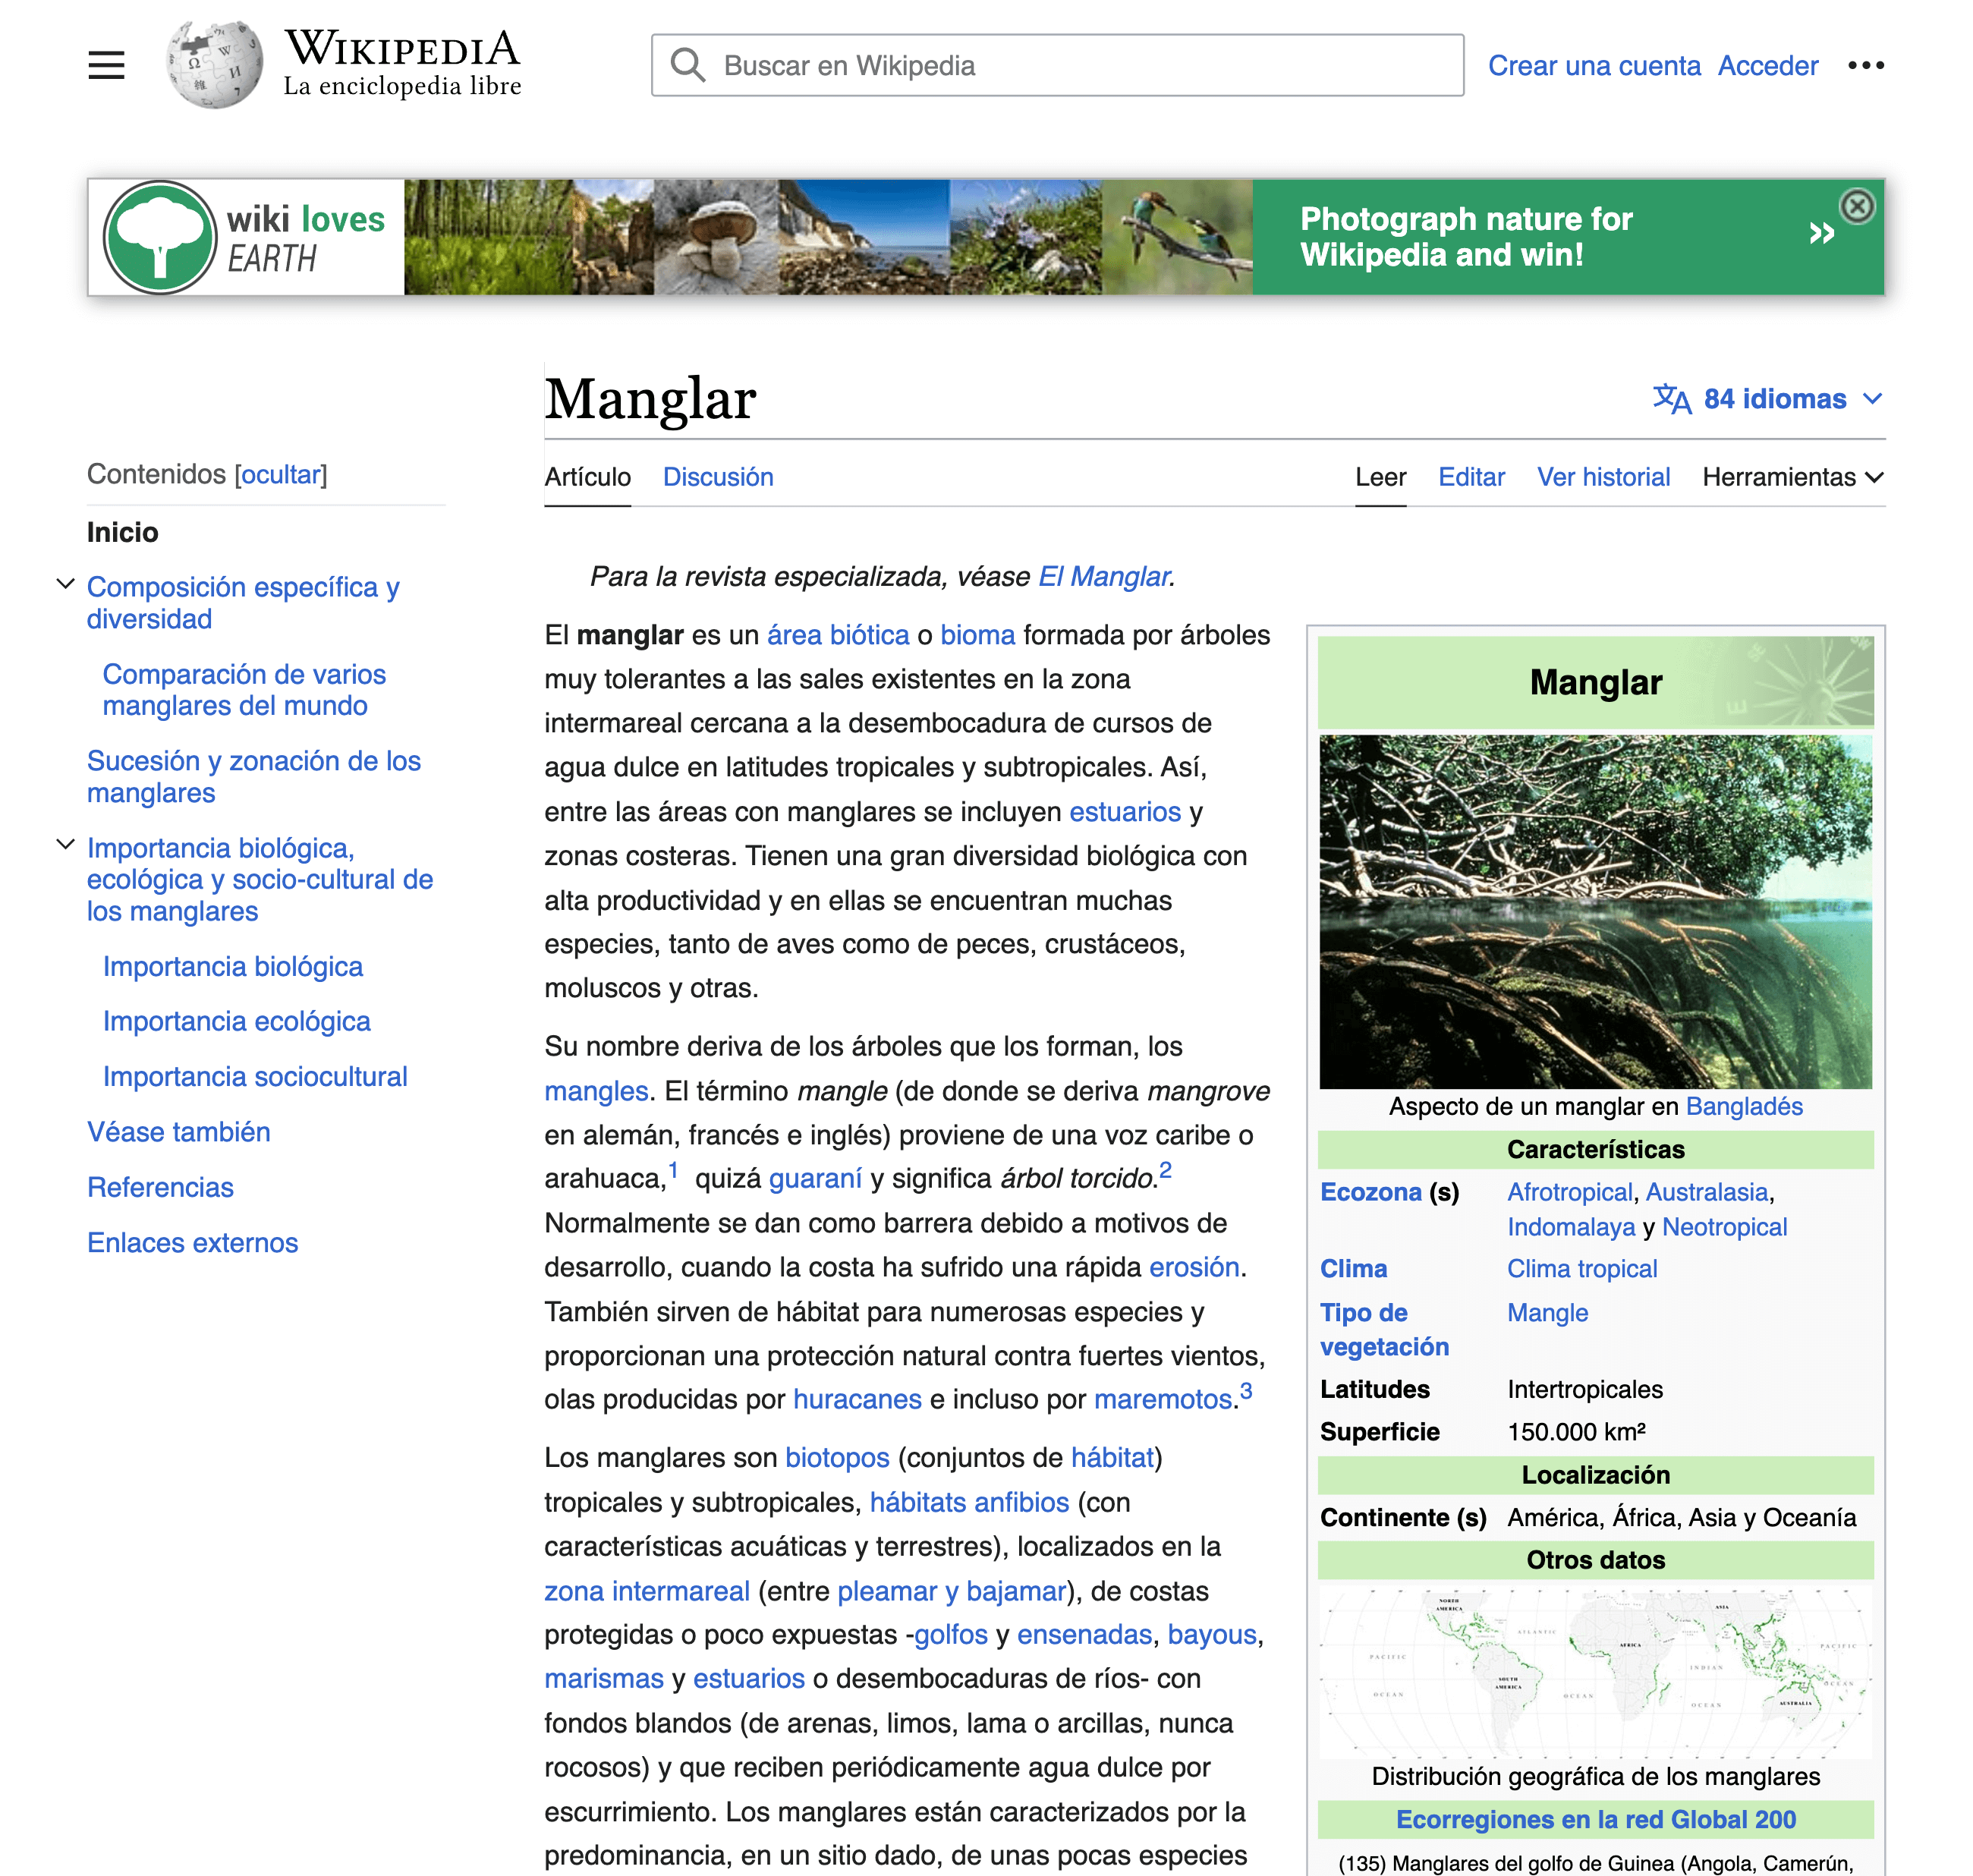 ejemplo visual de que Wikipedia es un excelente ejemplo de enlace interno inteligente.